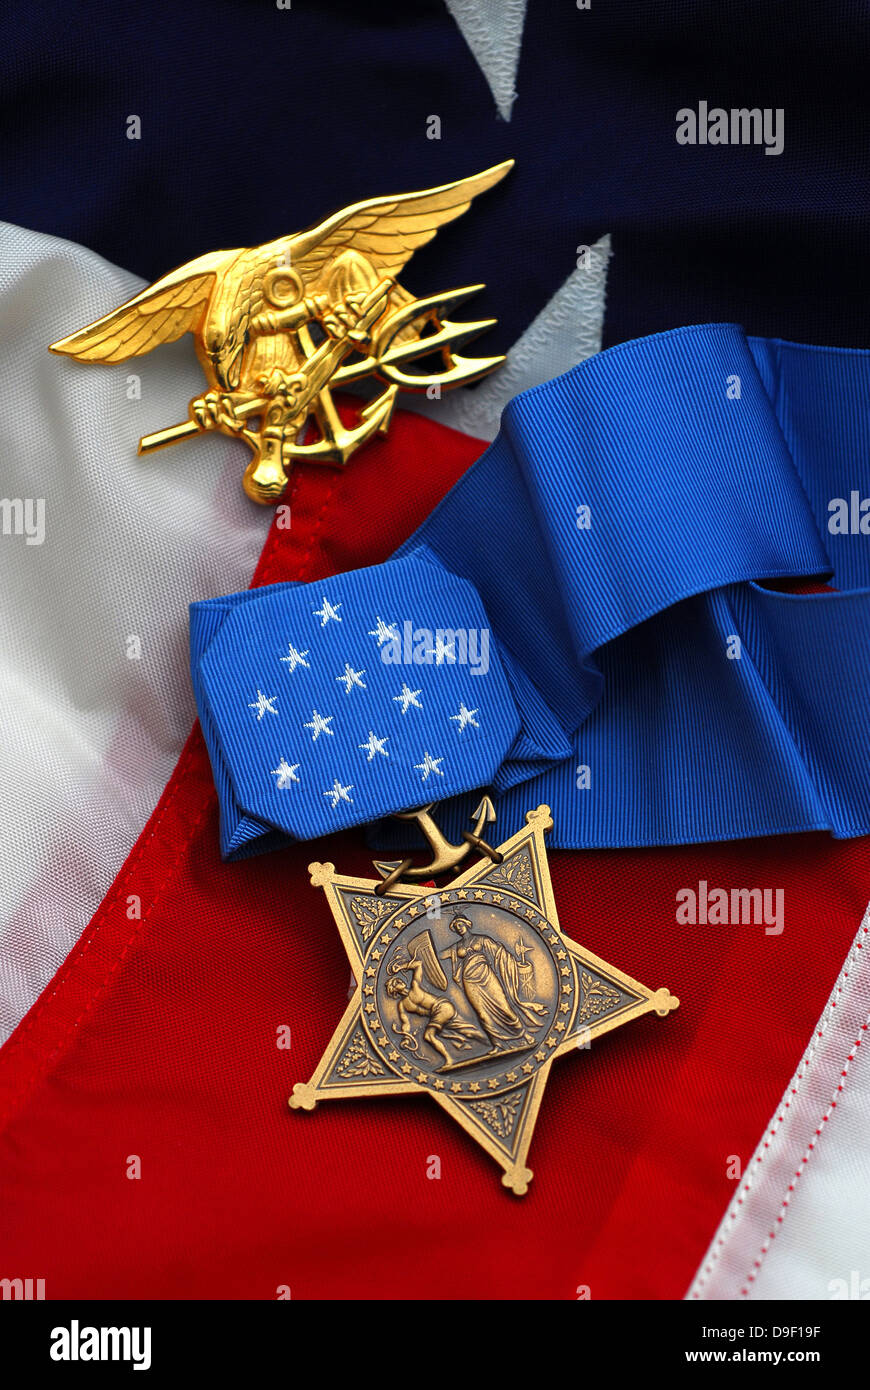 Nahaufnahme Von Medal Of Honor Ausgezeichnet Navy Seals Die Hochste Militarische Auszeichnung Der Us Regierung Stockfotografie Alamy